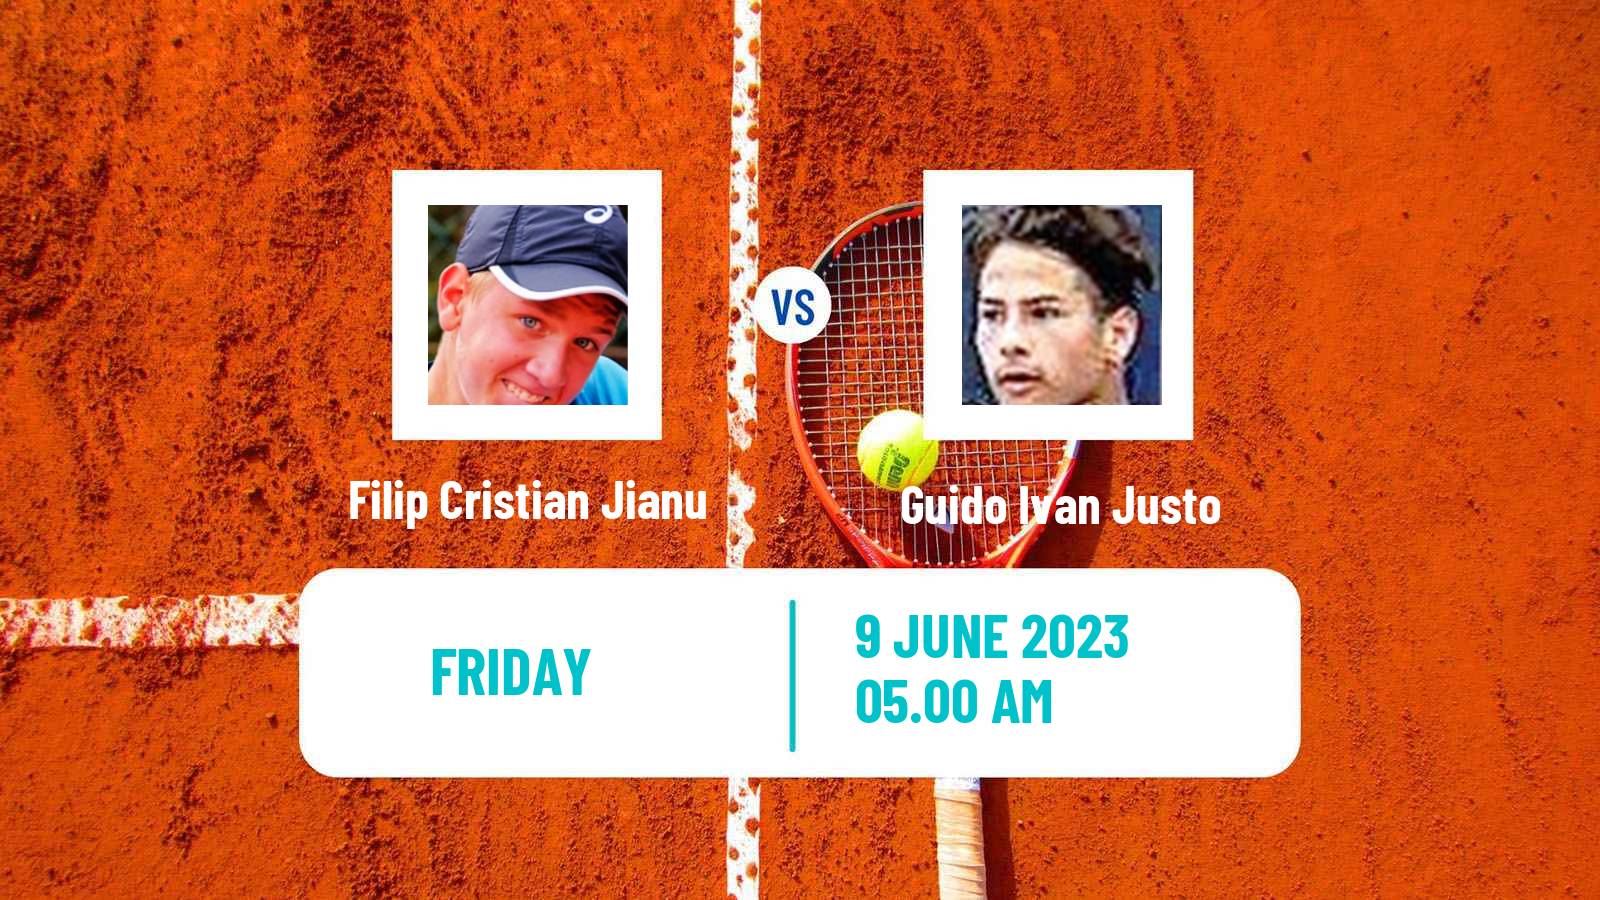 Tennis ITF M15 Tanger Men Filip Cristian Jianu - Guido Ivan Justo